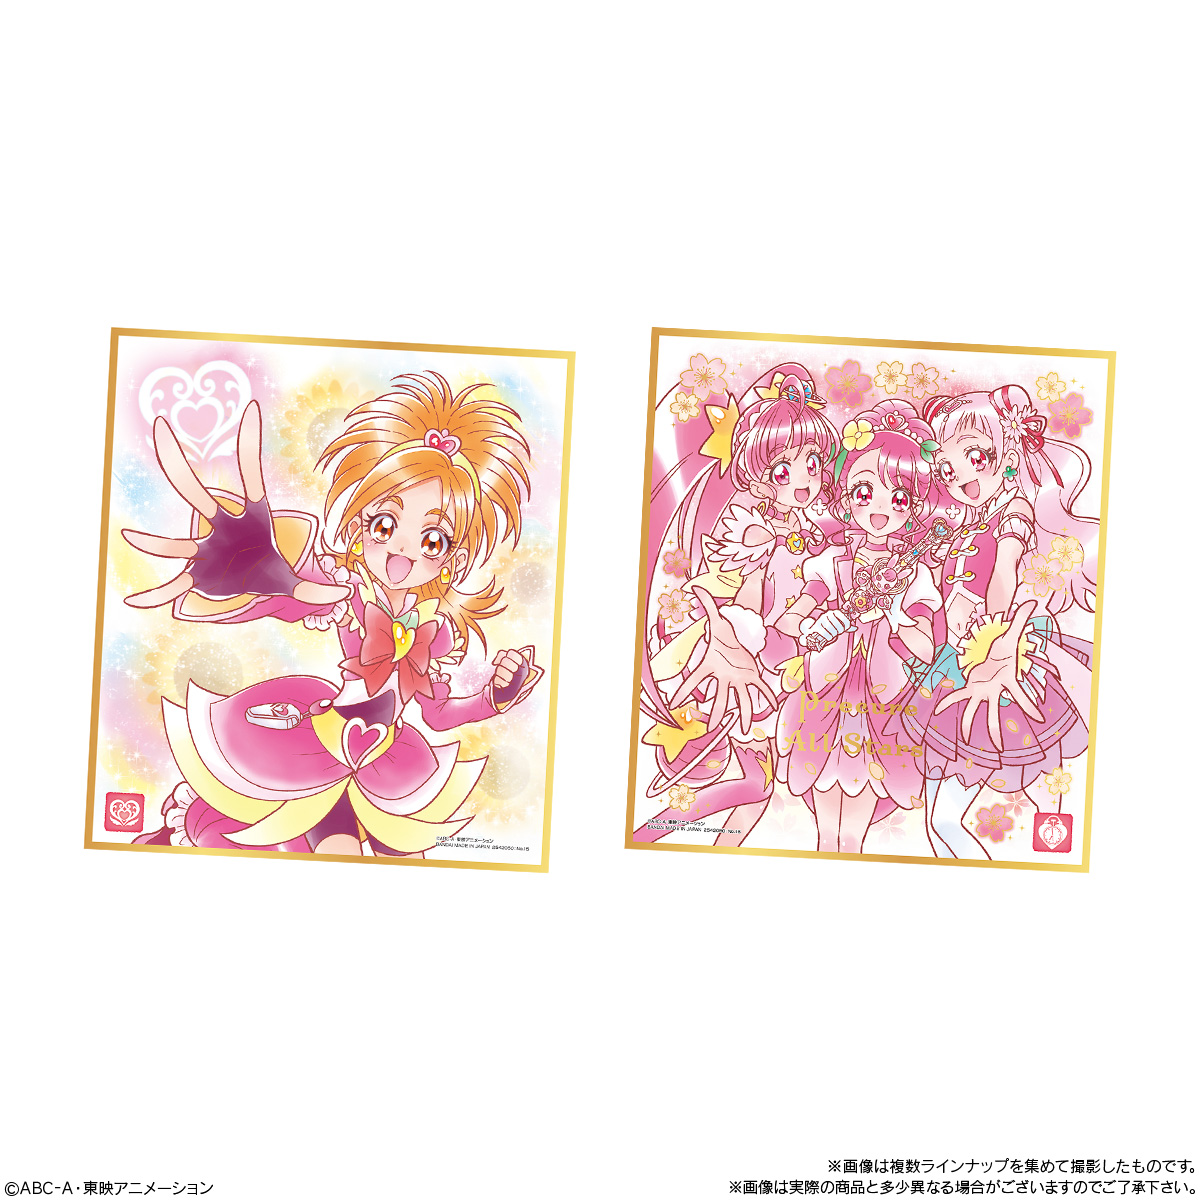 【食玩】プリキュア『プリキュア 色紙ART3』10個入りBOX-006